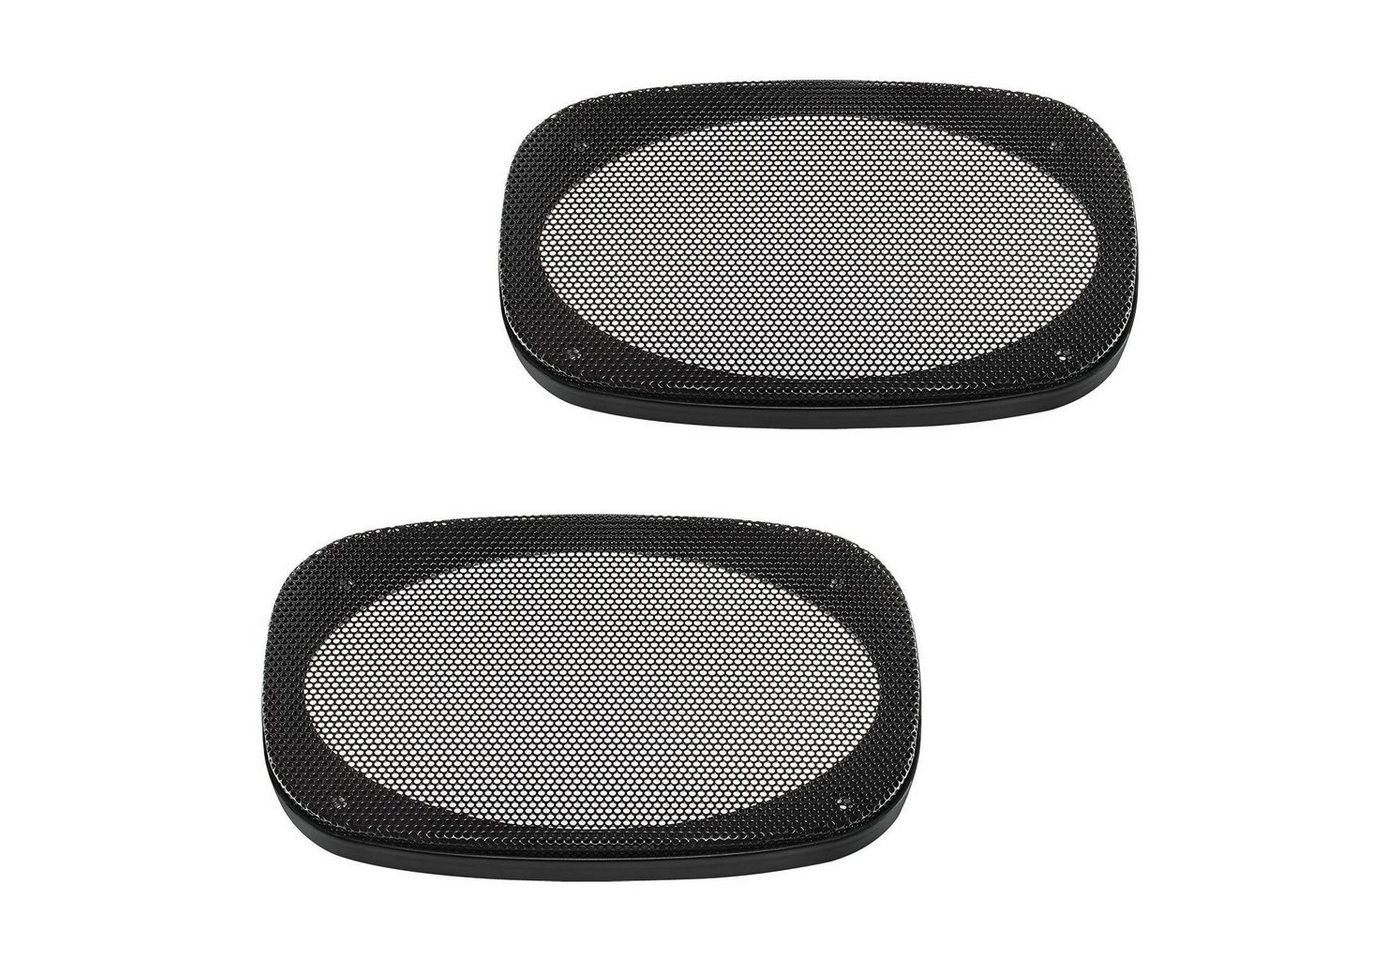 tomzz Audio Lautsprecher Gitter Grill für 4 x 6 Zoll Lautsprecher schwarz 2-teilig Auto-Lautsprecher von Tomzz Audio